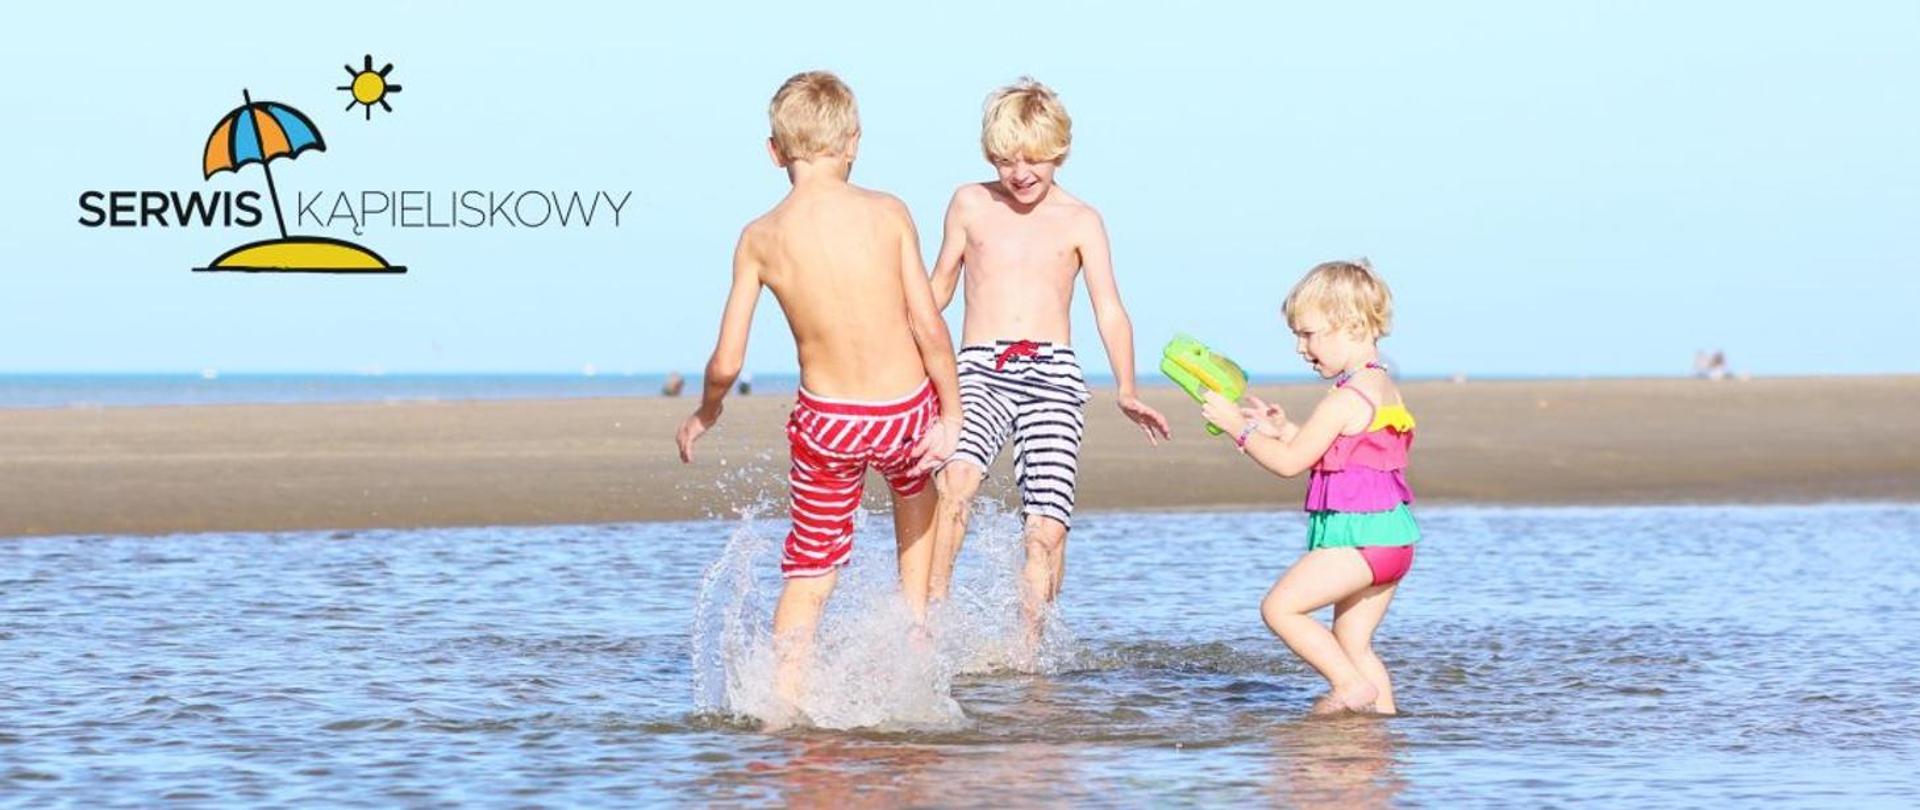 Zdjęcie dzieci bawiących się w wodzie przy plaży. Logo Serwisu Kąpieliskowego.